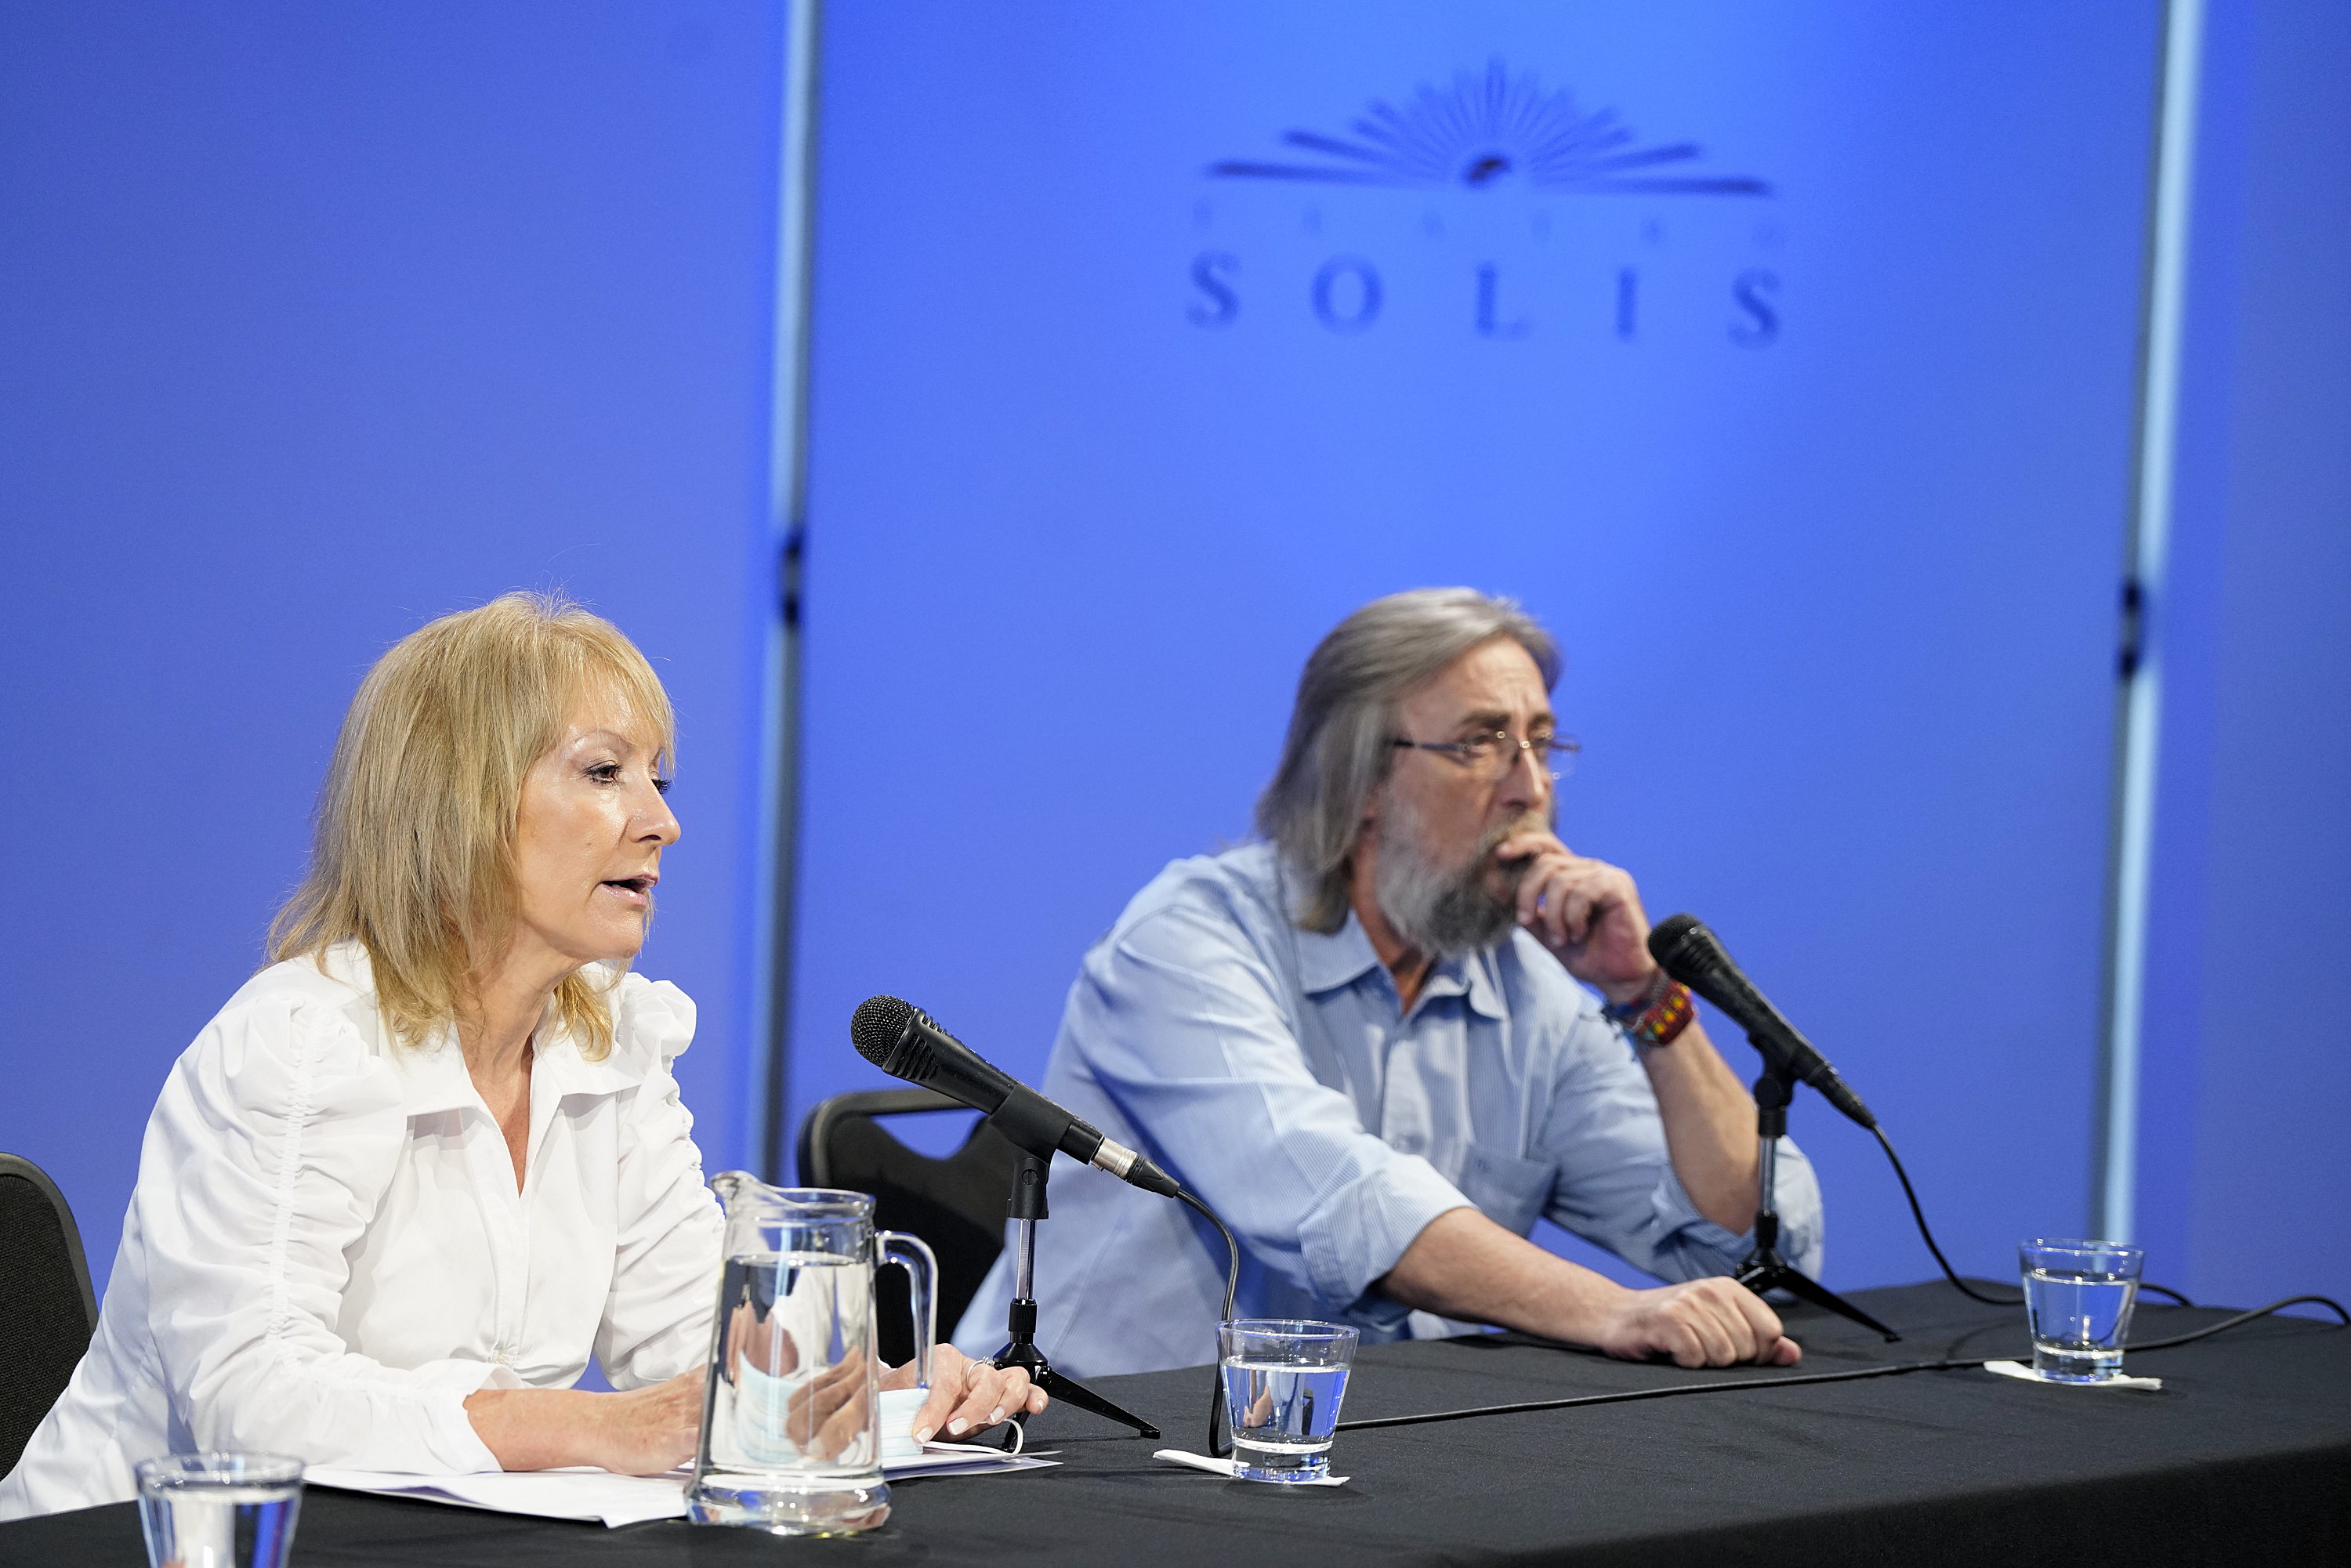 Conferencia de prensa de la Intendenta en el Teatro Solís